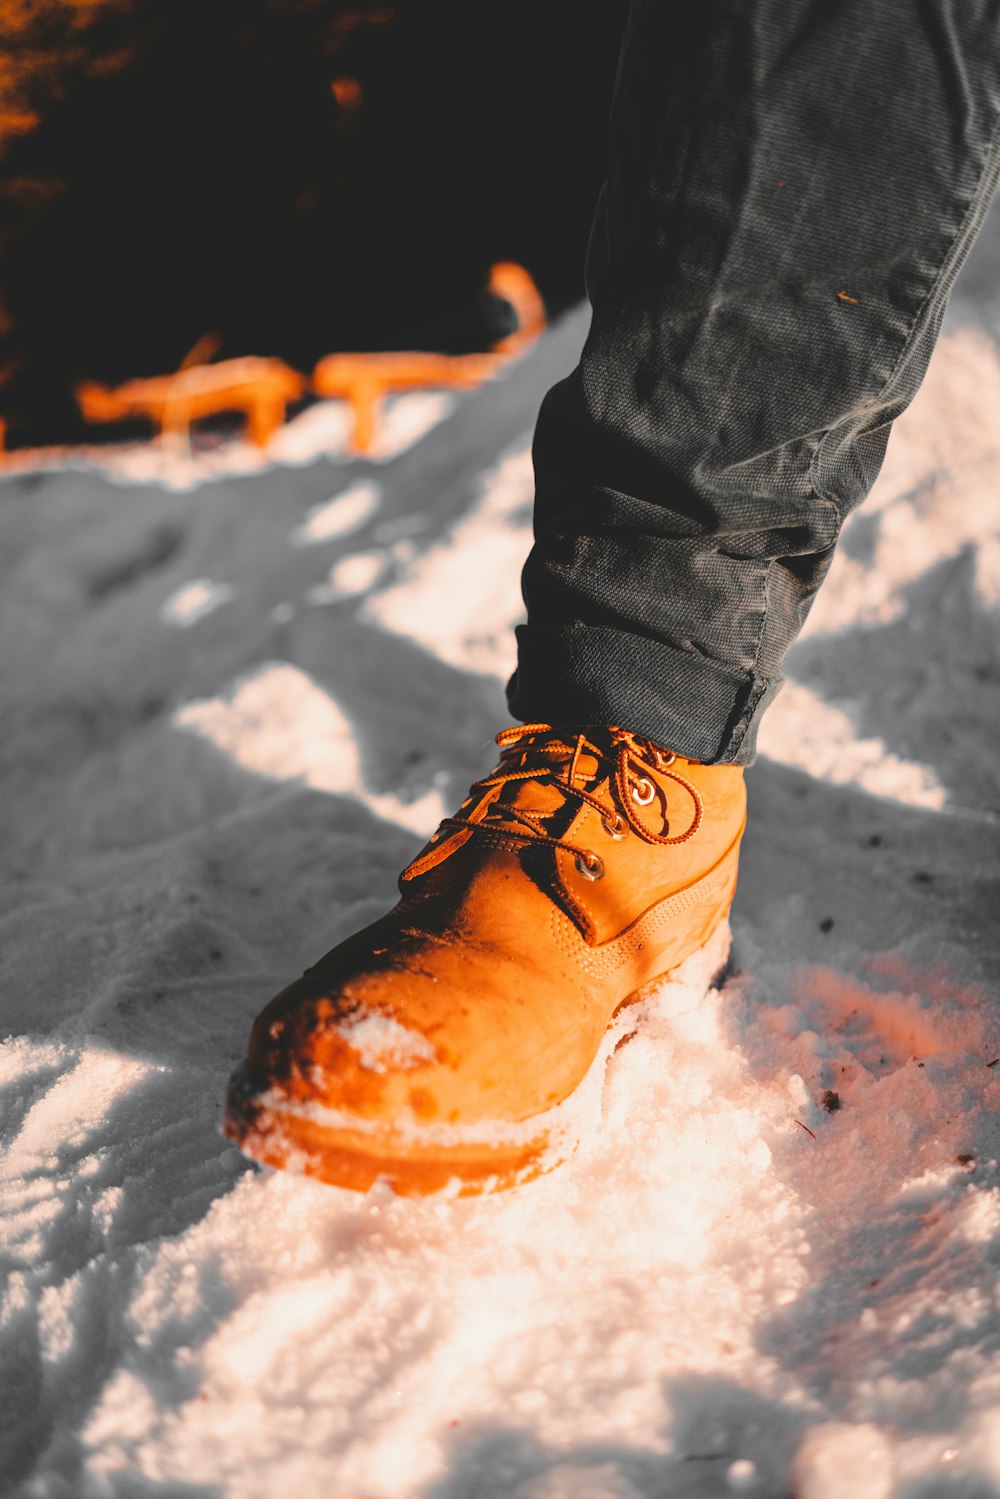 Una persona parada en la nieve con un par de zapatos naranjas